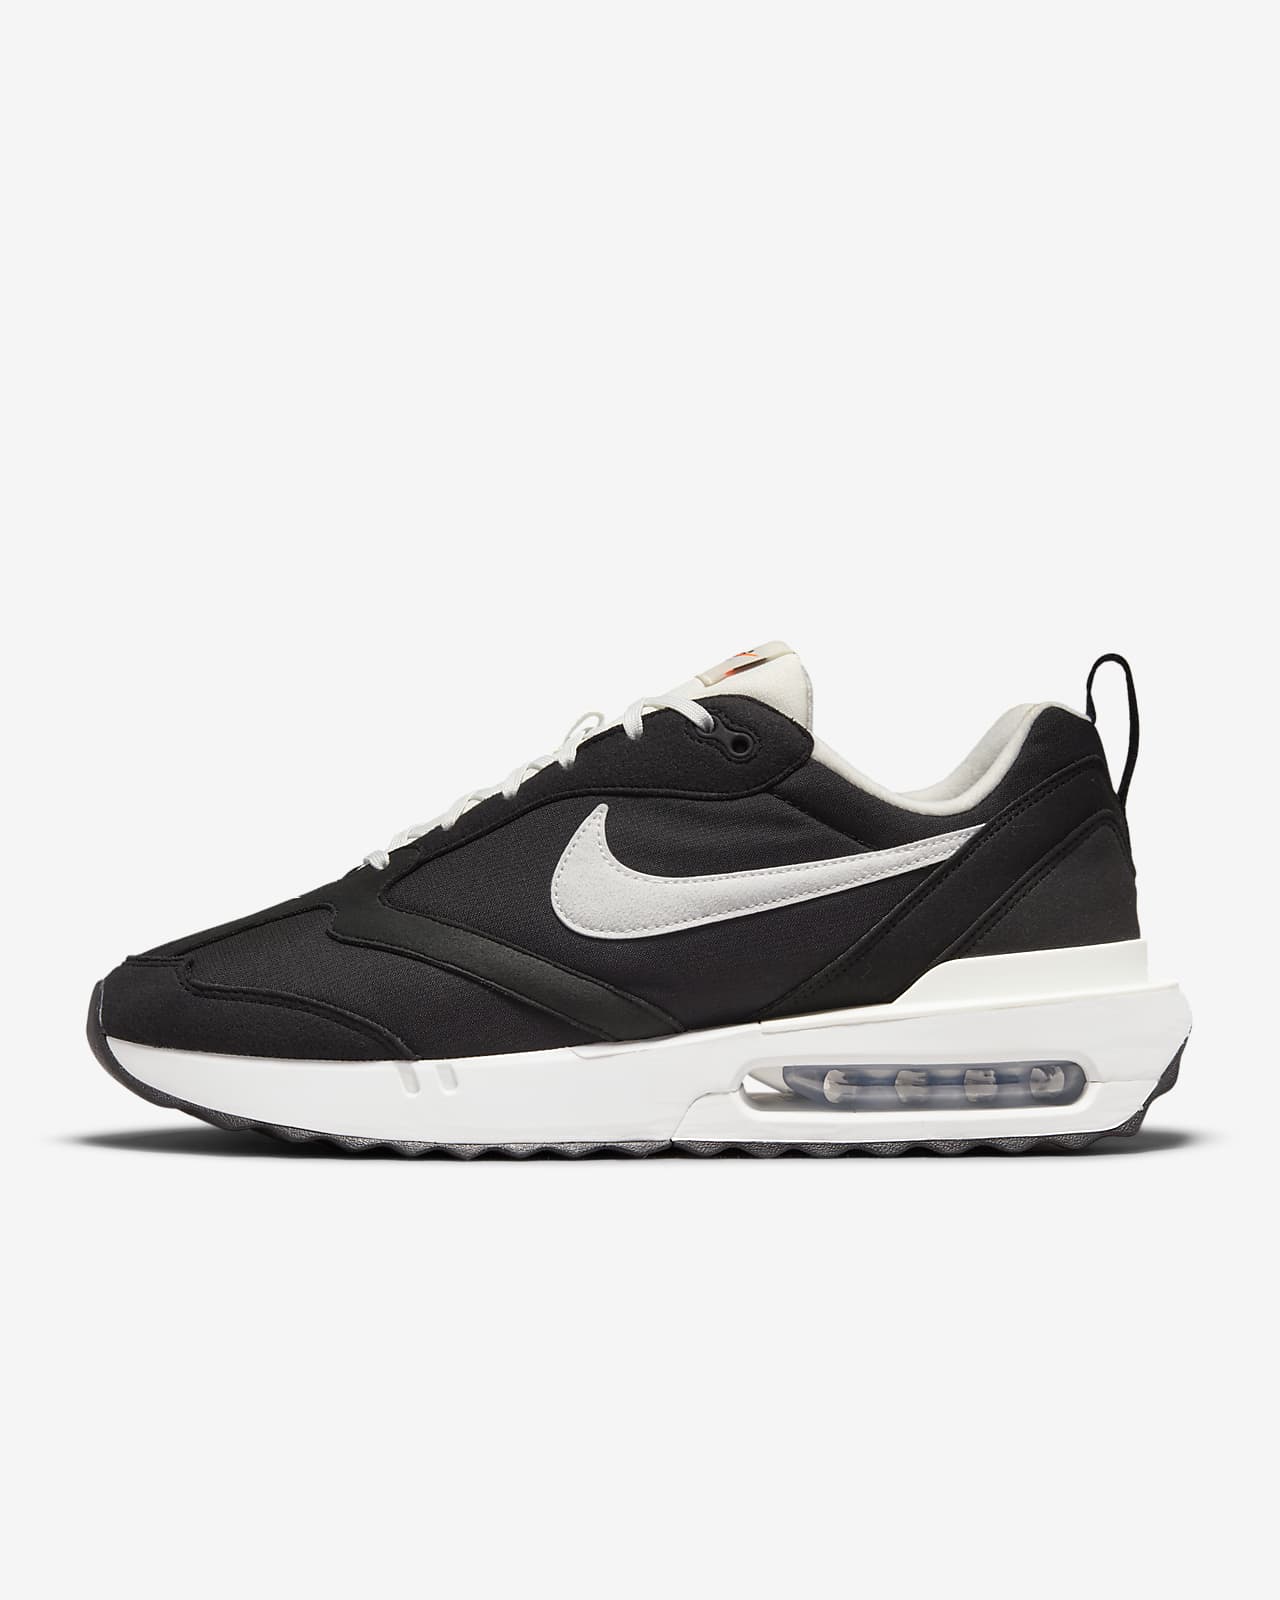 Nike Air Max Dawn 'Black / White' $66.97 Free Shipping - Sneaker Steal